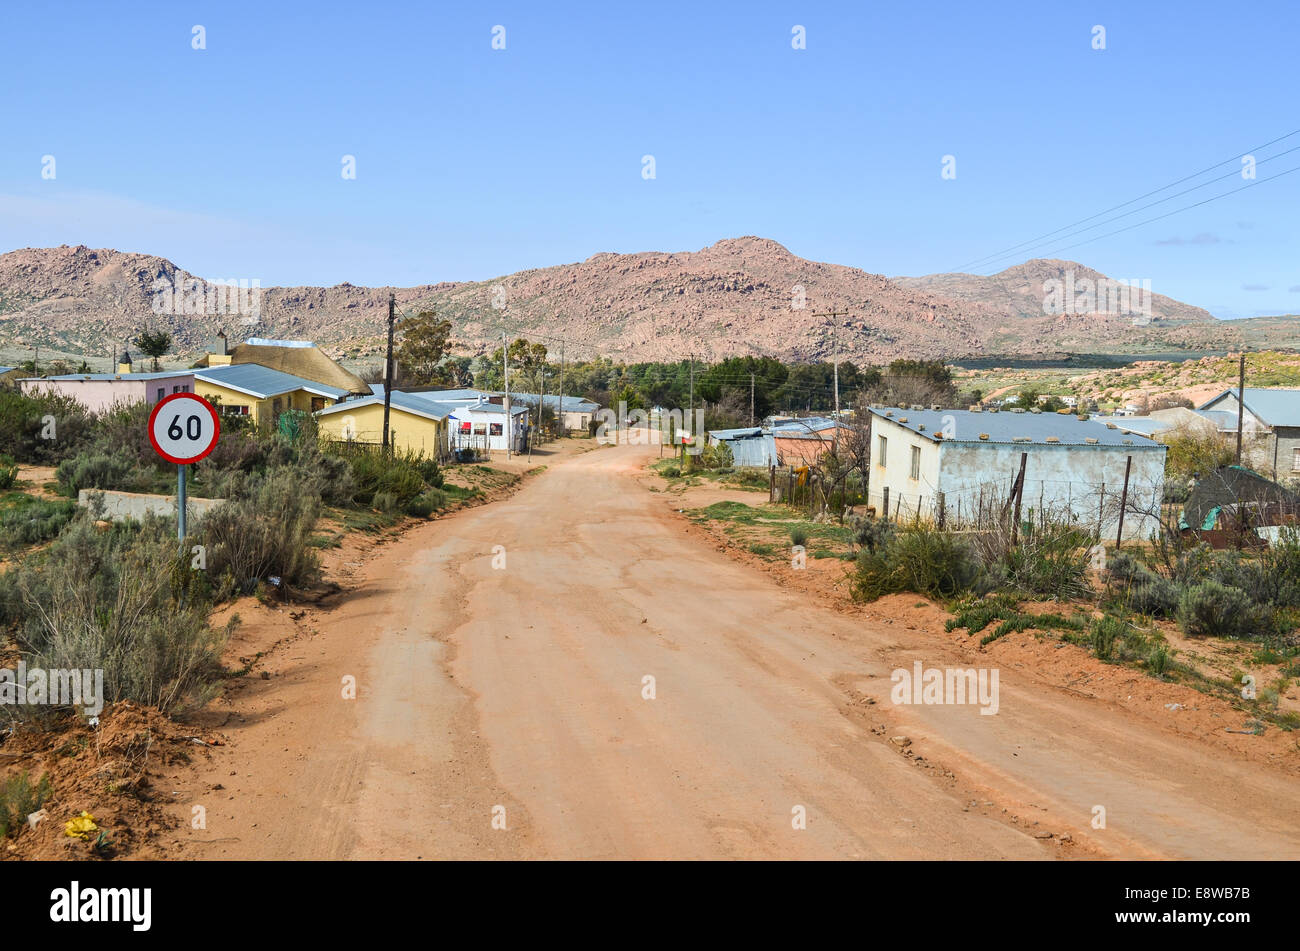 La saleté des rues de Leliefontein, une communauté dans les hautes collines de la province du Cap du Nord, Afrique du Sud Banque D'Images